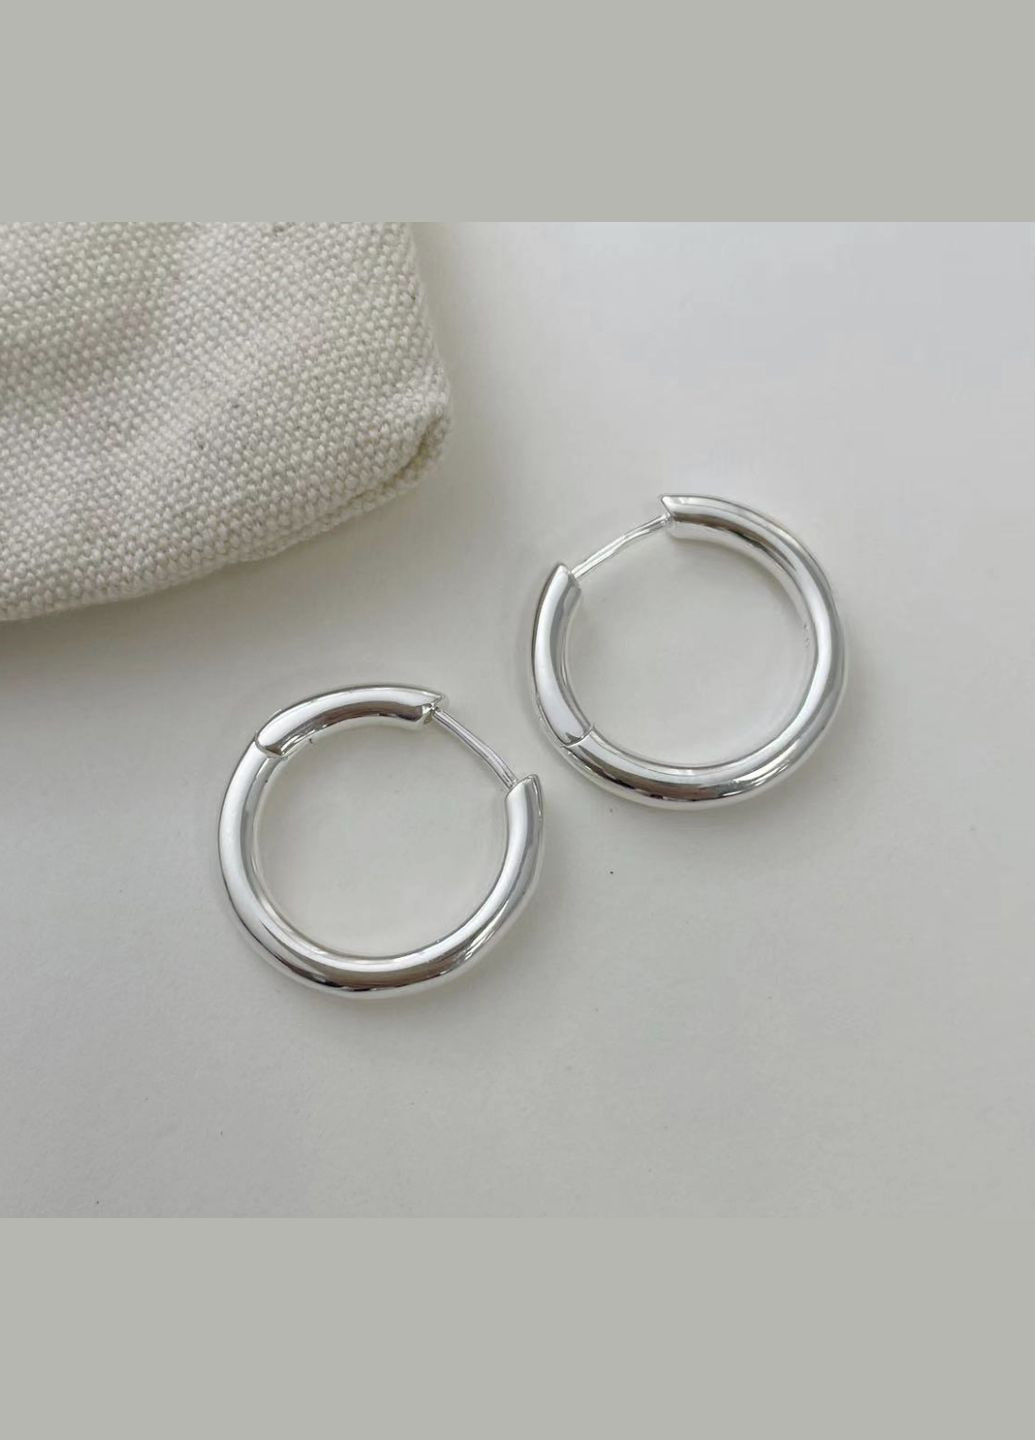 Срібні S925 сережки круглі без каміння, сережки 2 см срібні великі, кульчики срібні мінімалістичні, подарунок дівчині СС11 Etre (292401671)